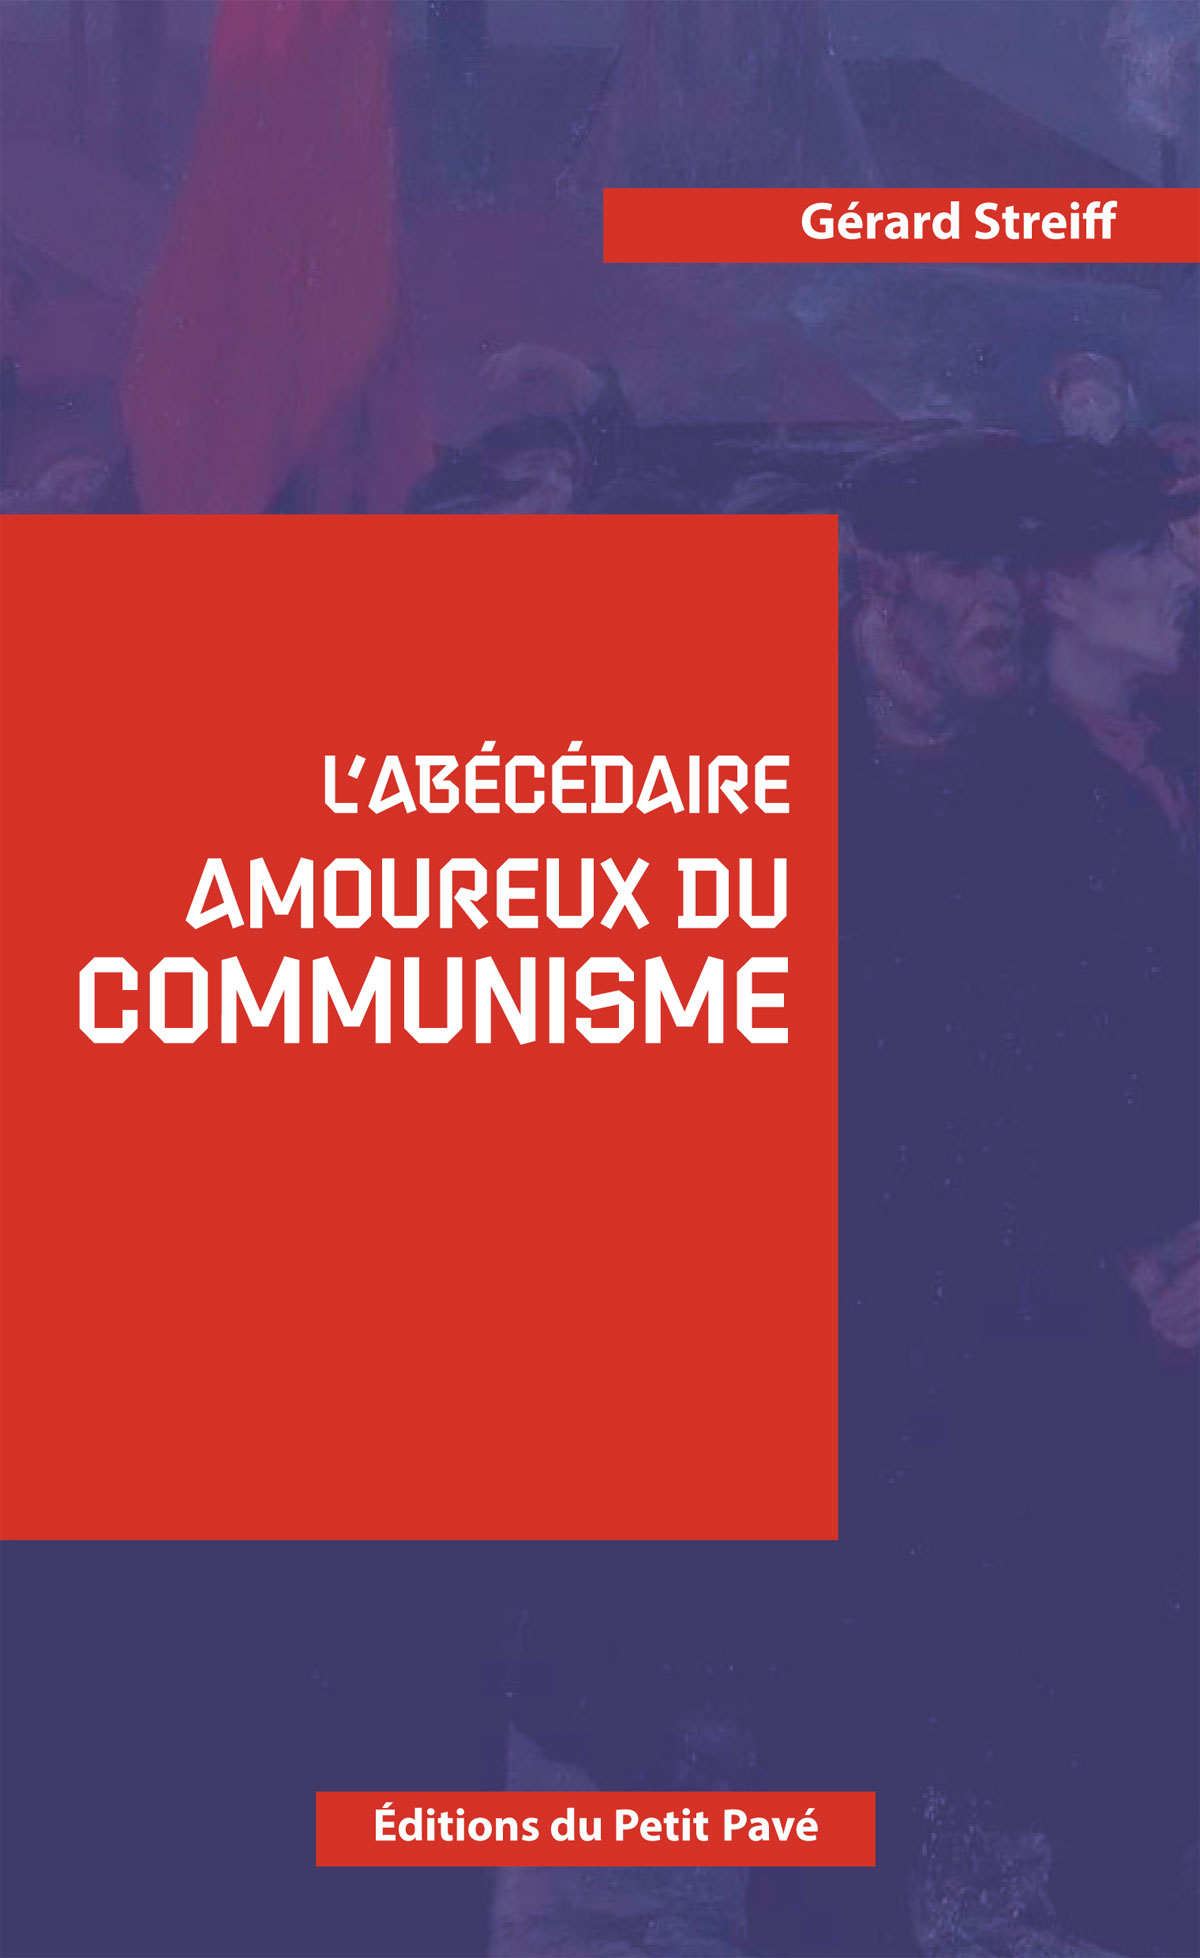 L'abécédaire amoureux du Communisme - Photo abecedaire_amoureux_du_communisme-de_gerard_streiff-aux_editions_du_petit_pave.jpg